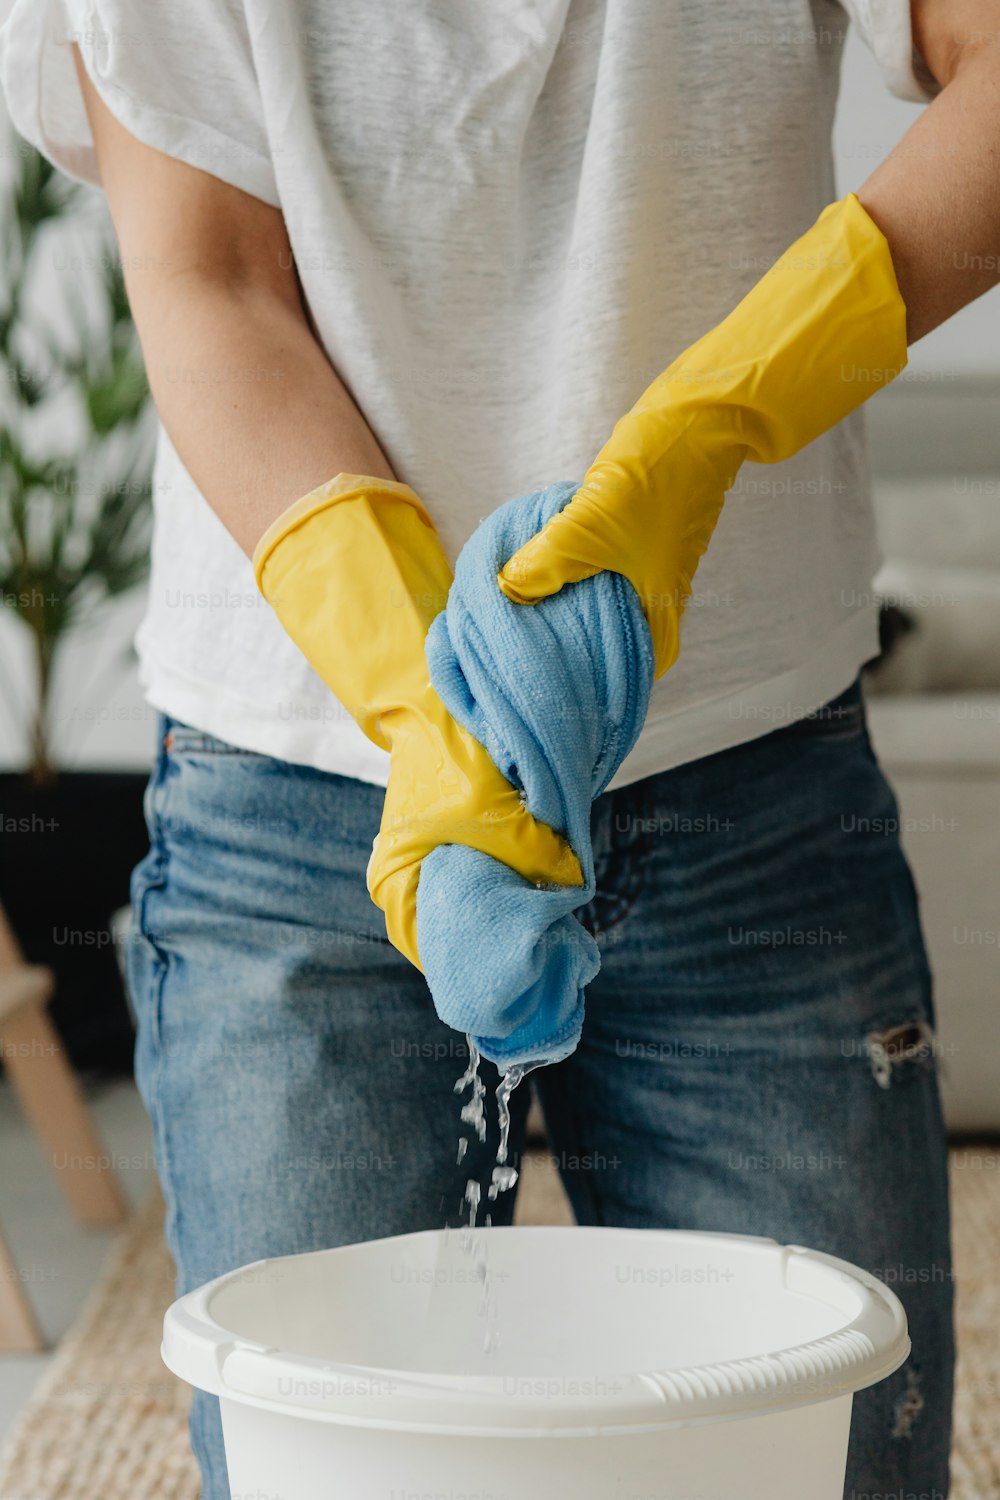 Una persona con guantes amarillos está lavando un cubo – Limpieza Imagen en Unsplash